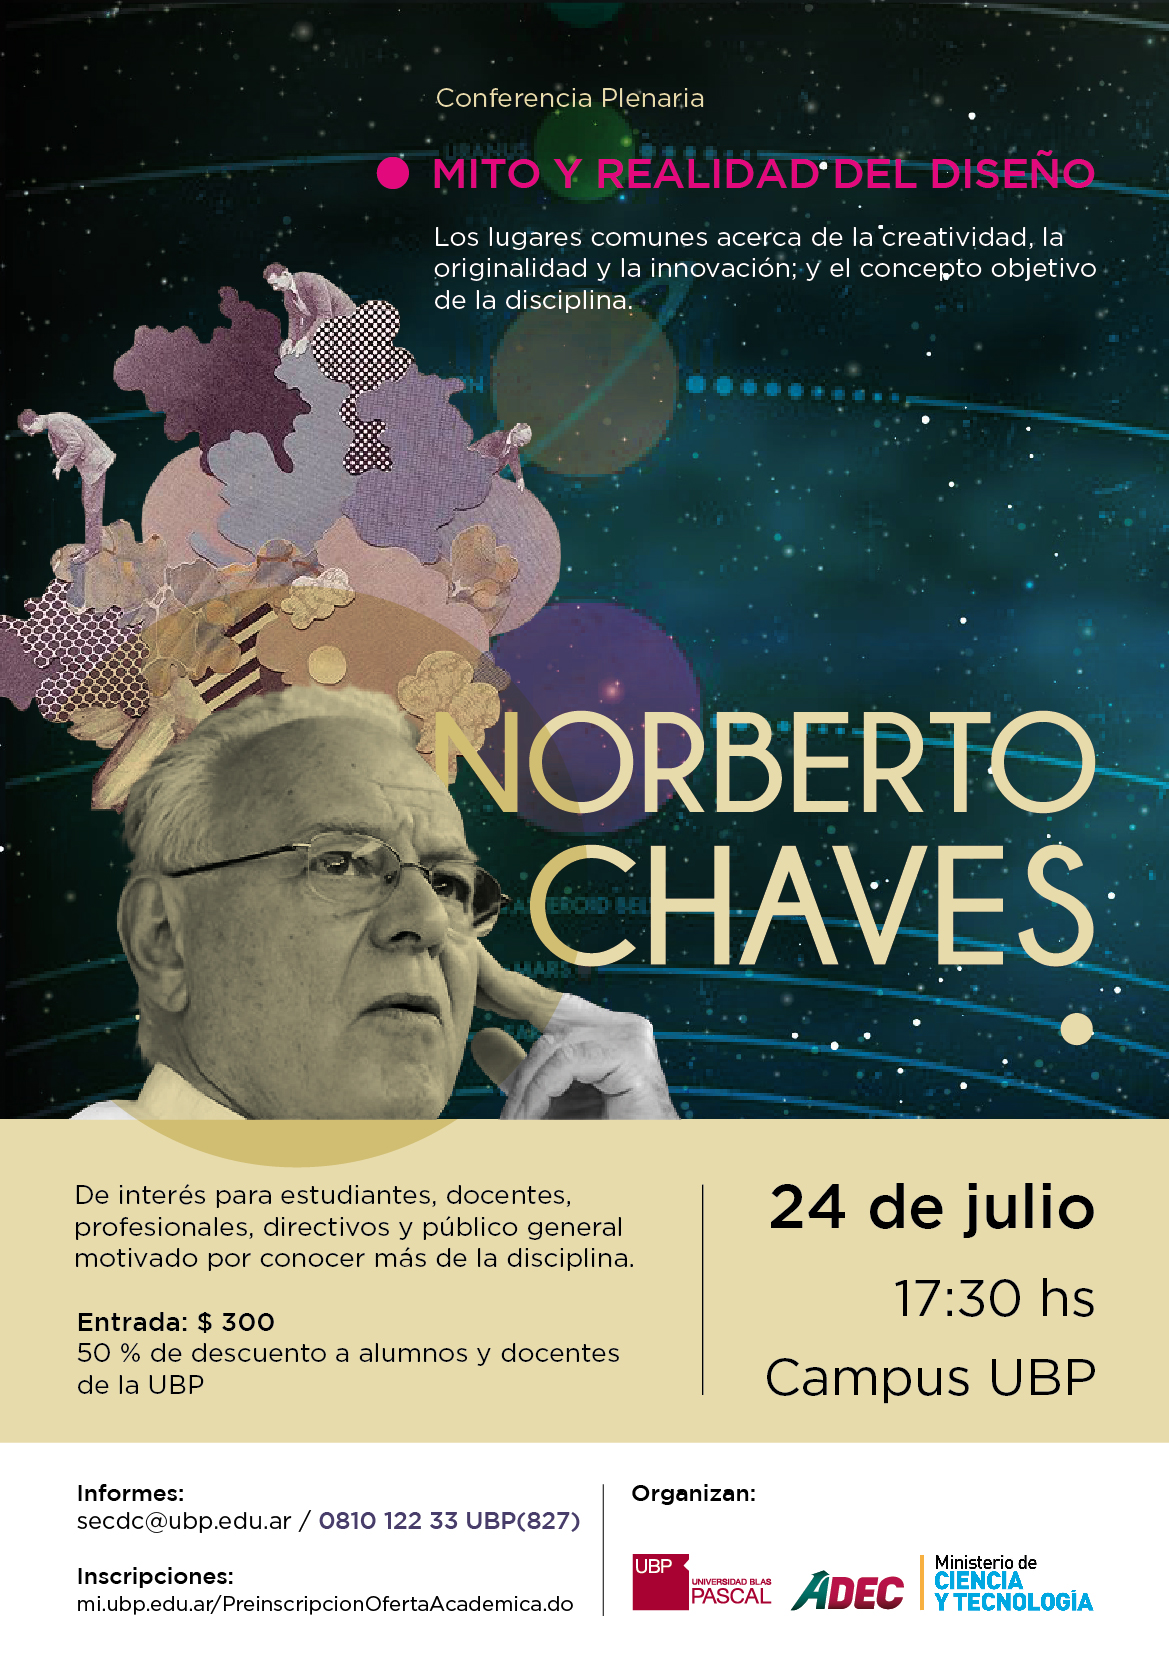 Norberto Chaves: Conferencia, Mito y realidad del diseño